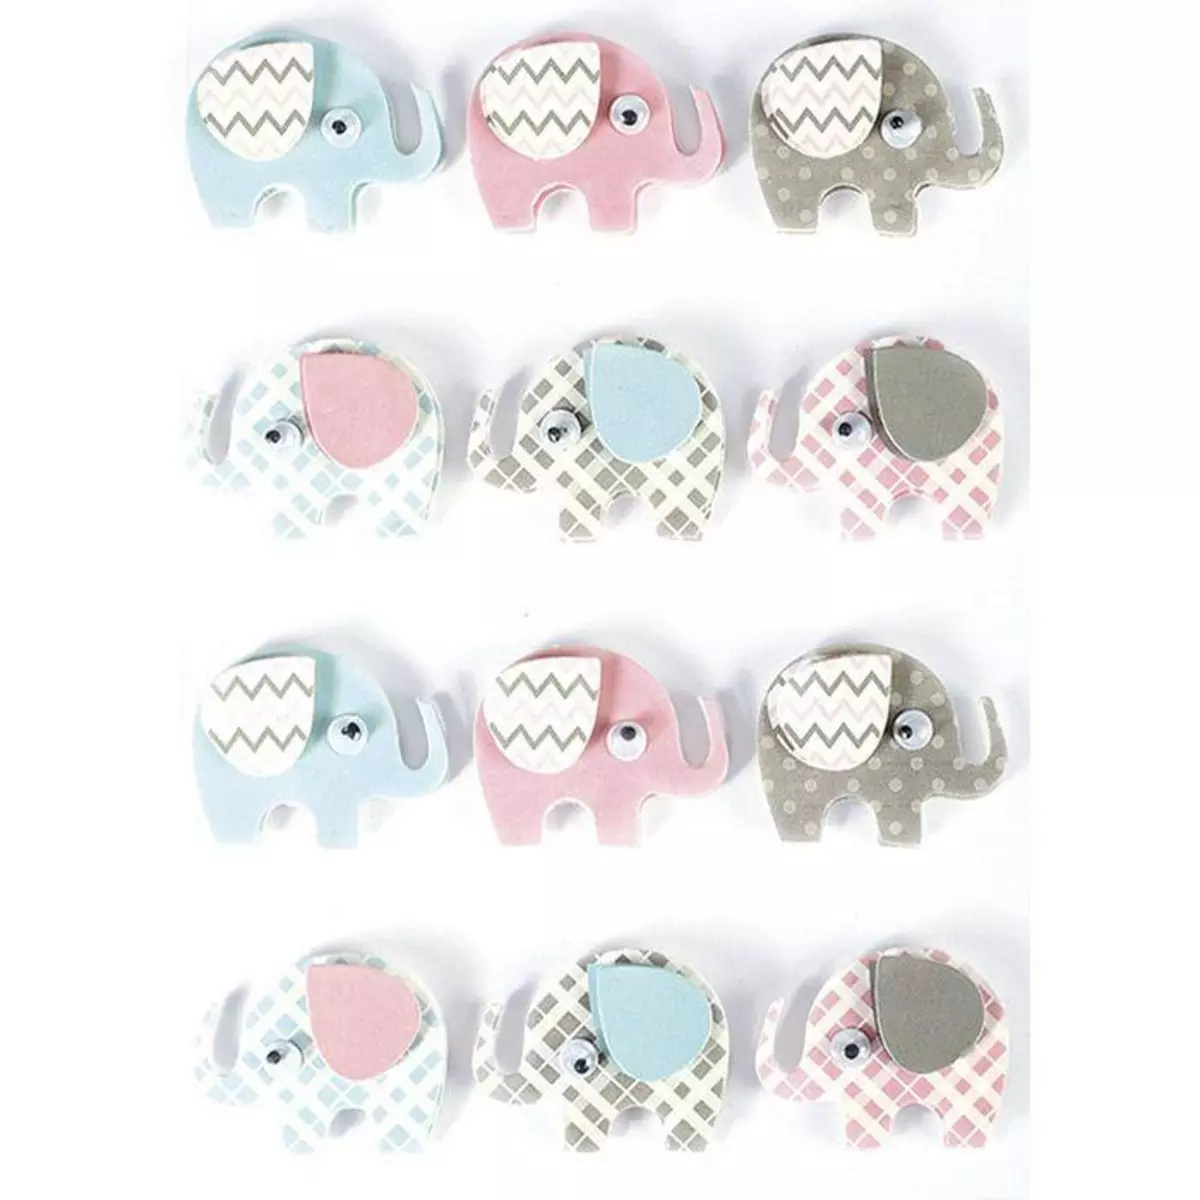 Graine créative 12 stickers 3D - Elephants 4,3 cm